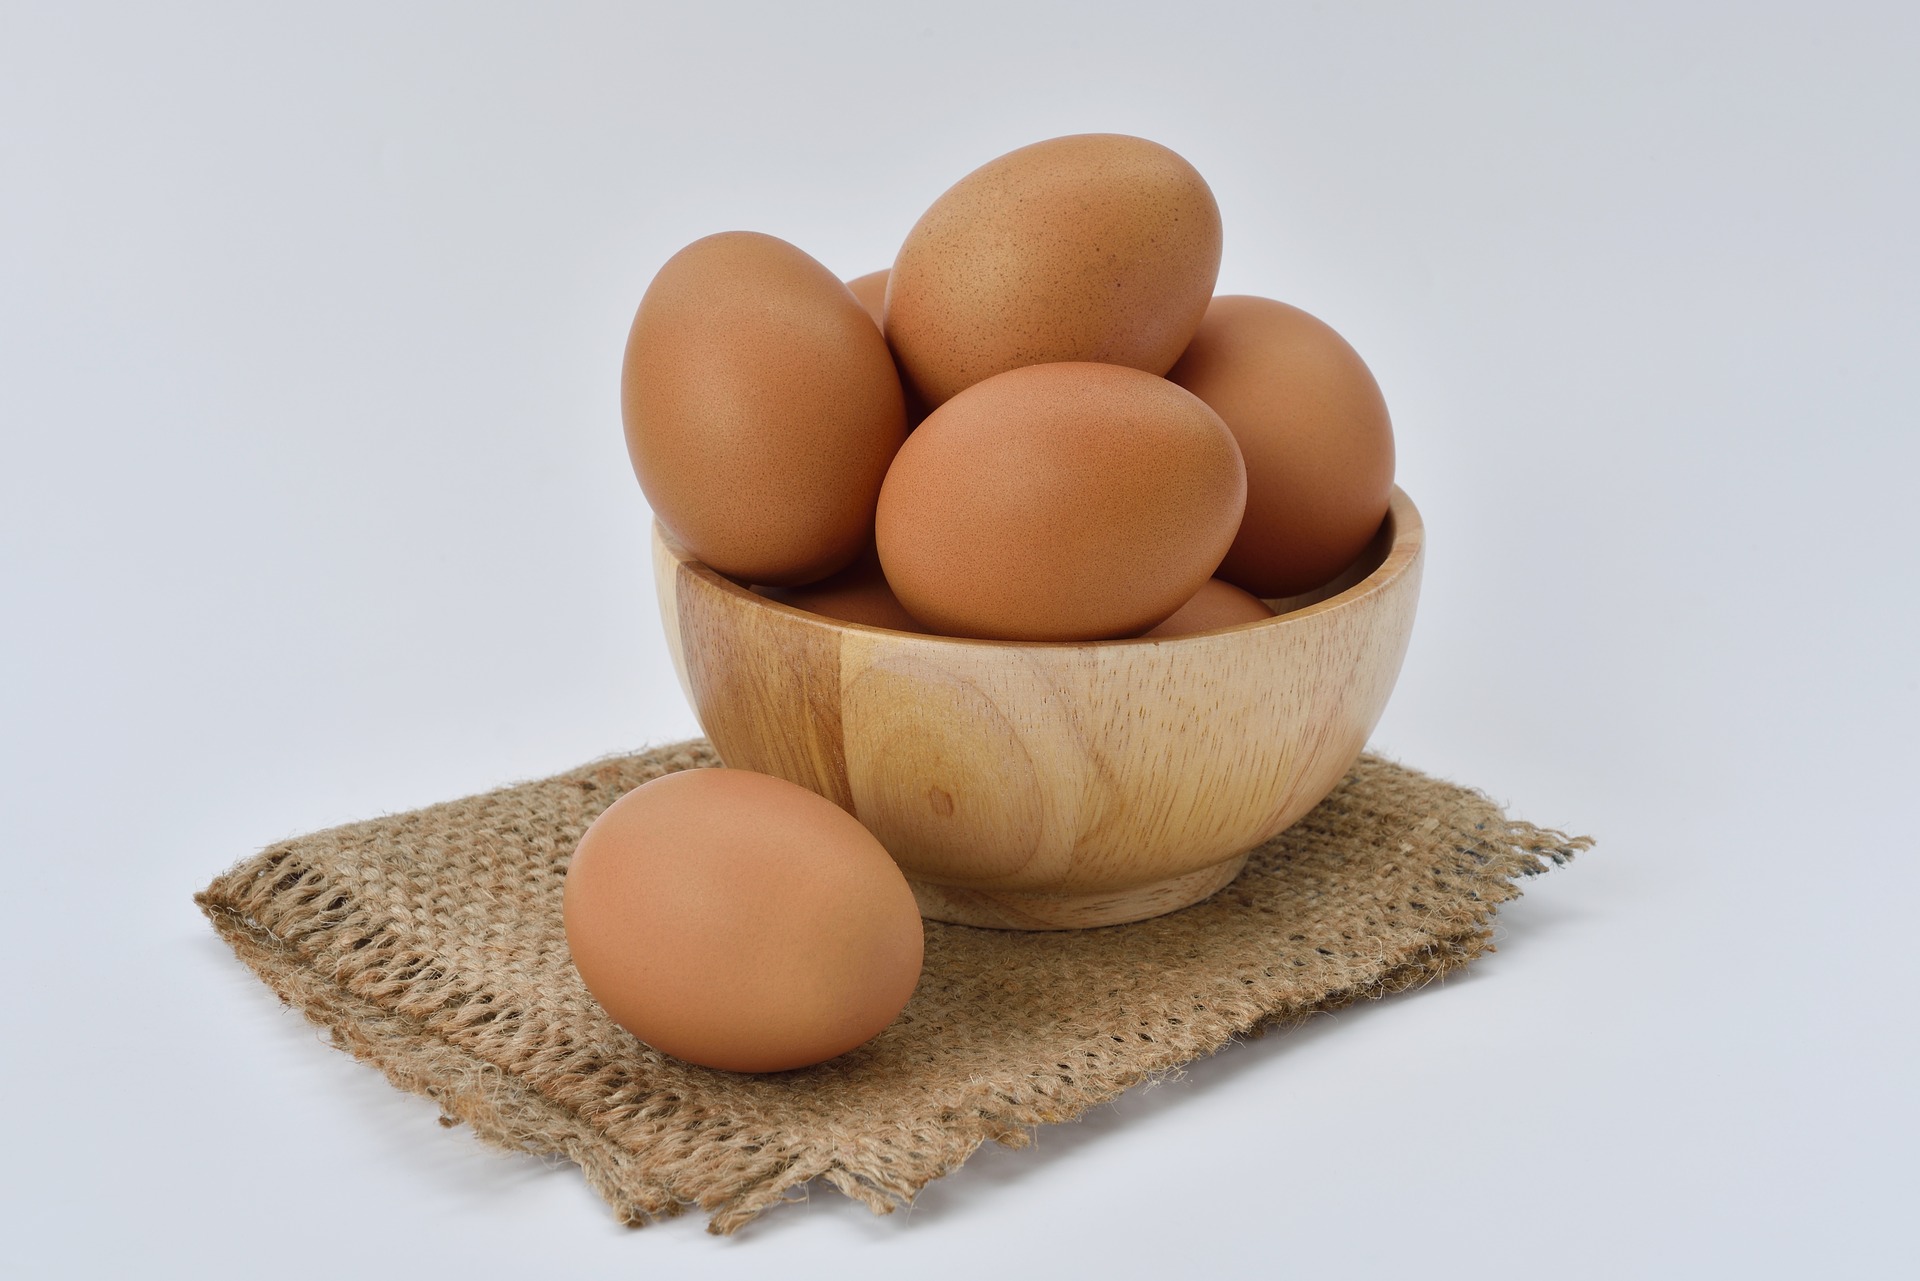 Fresh hens eggs